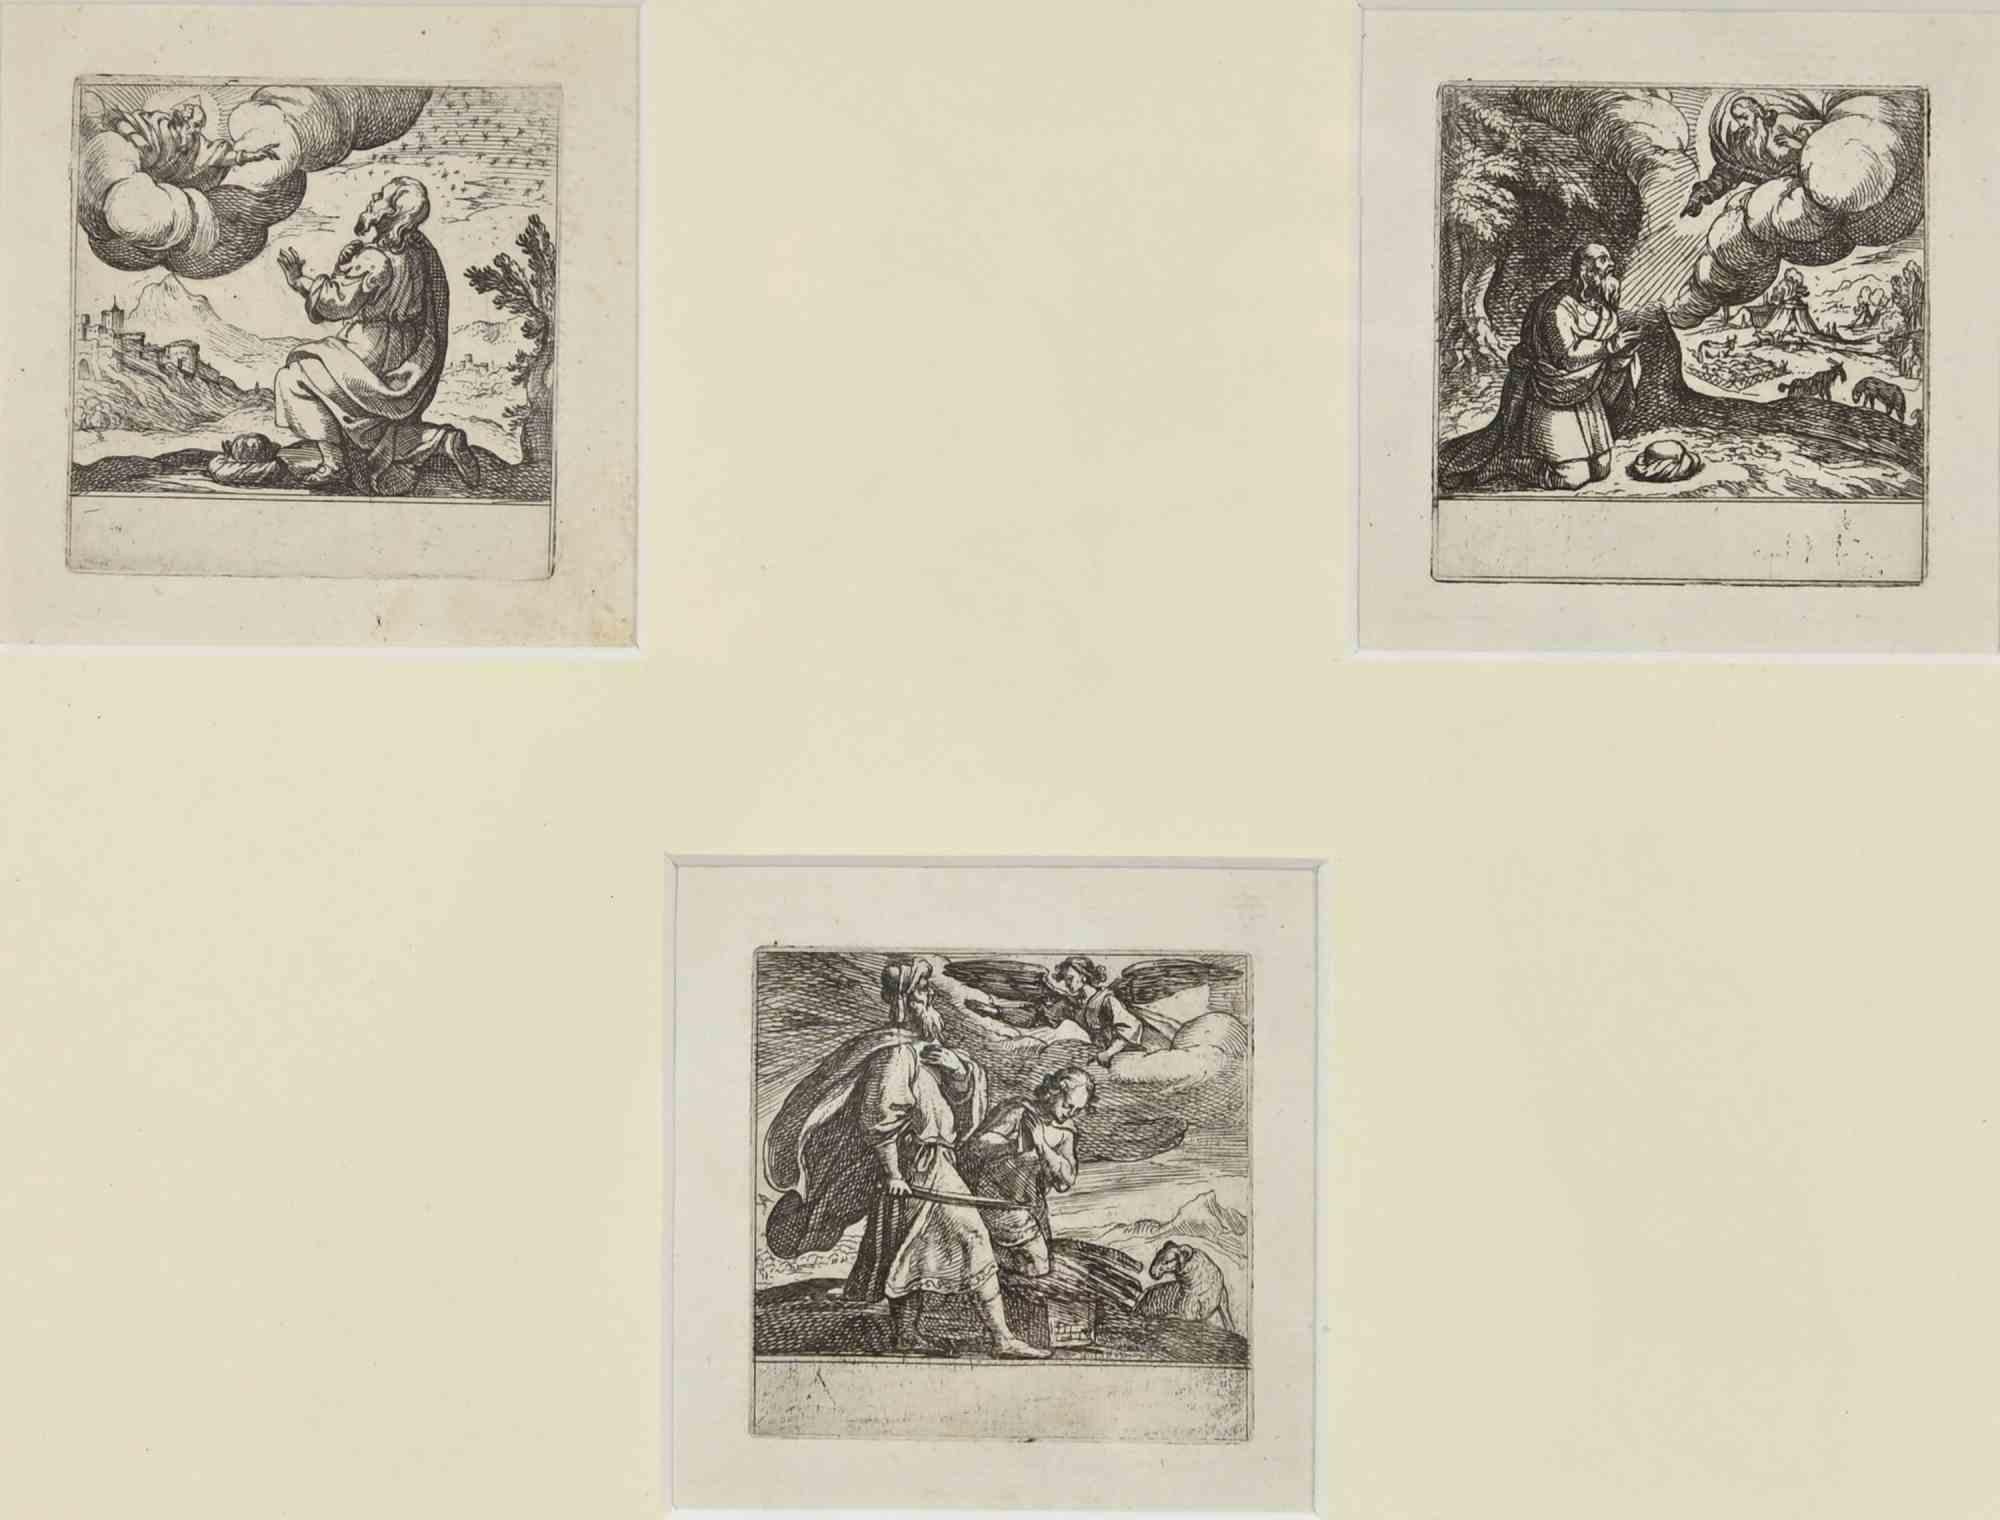 Histoires de la Genèse est une gravure réalisée par Antonio Tempesta au début du XVIIe siècle.

Elle fait partie d'une série de trois plaques. Elle représente le sacrifice d'Isaac.

3 eaux-fortes de 9 cm chacune ; 36x46 cm avec cadre.

Bonnes